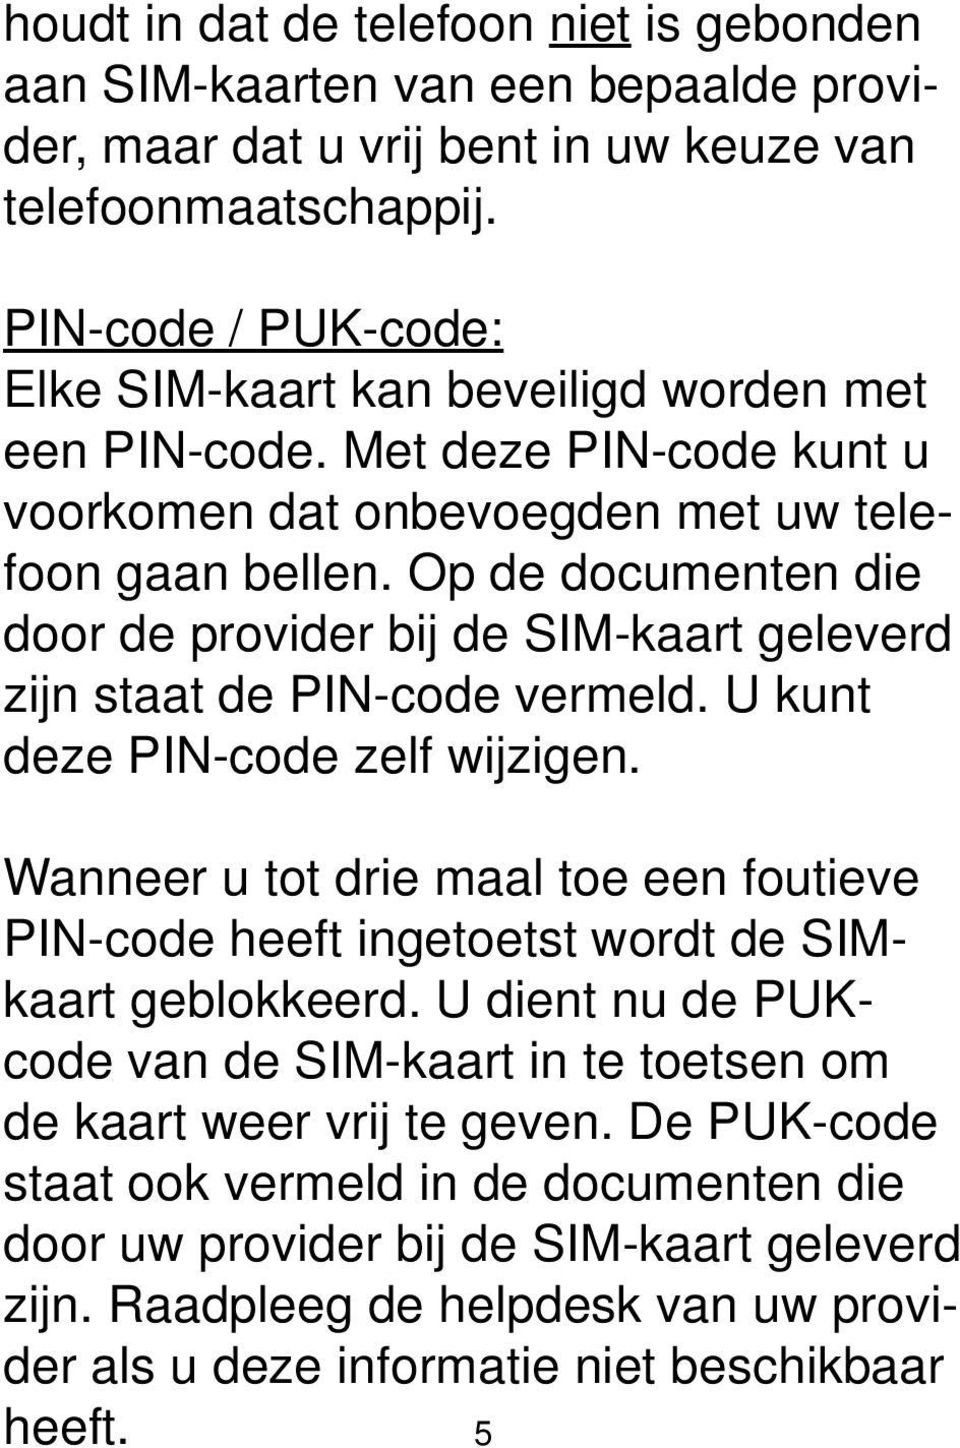 Op de documenten die door de provider bij de SIM-kaart geleverd zijn staat de PIN-code vermeld. U kunt deze PIN-code zelf wijzigen.